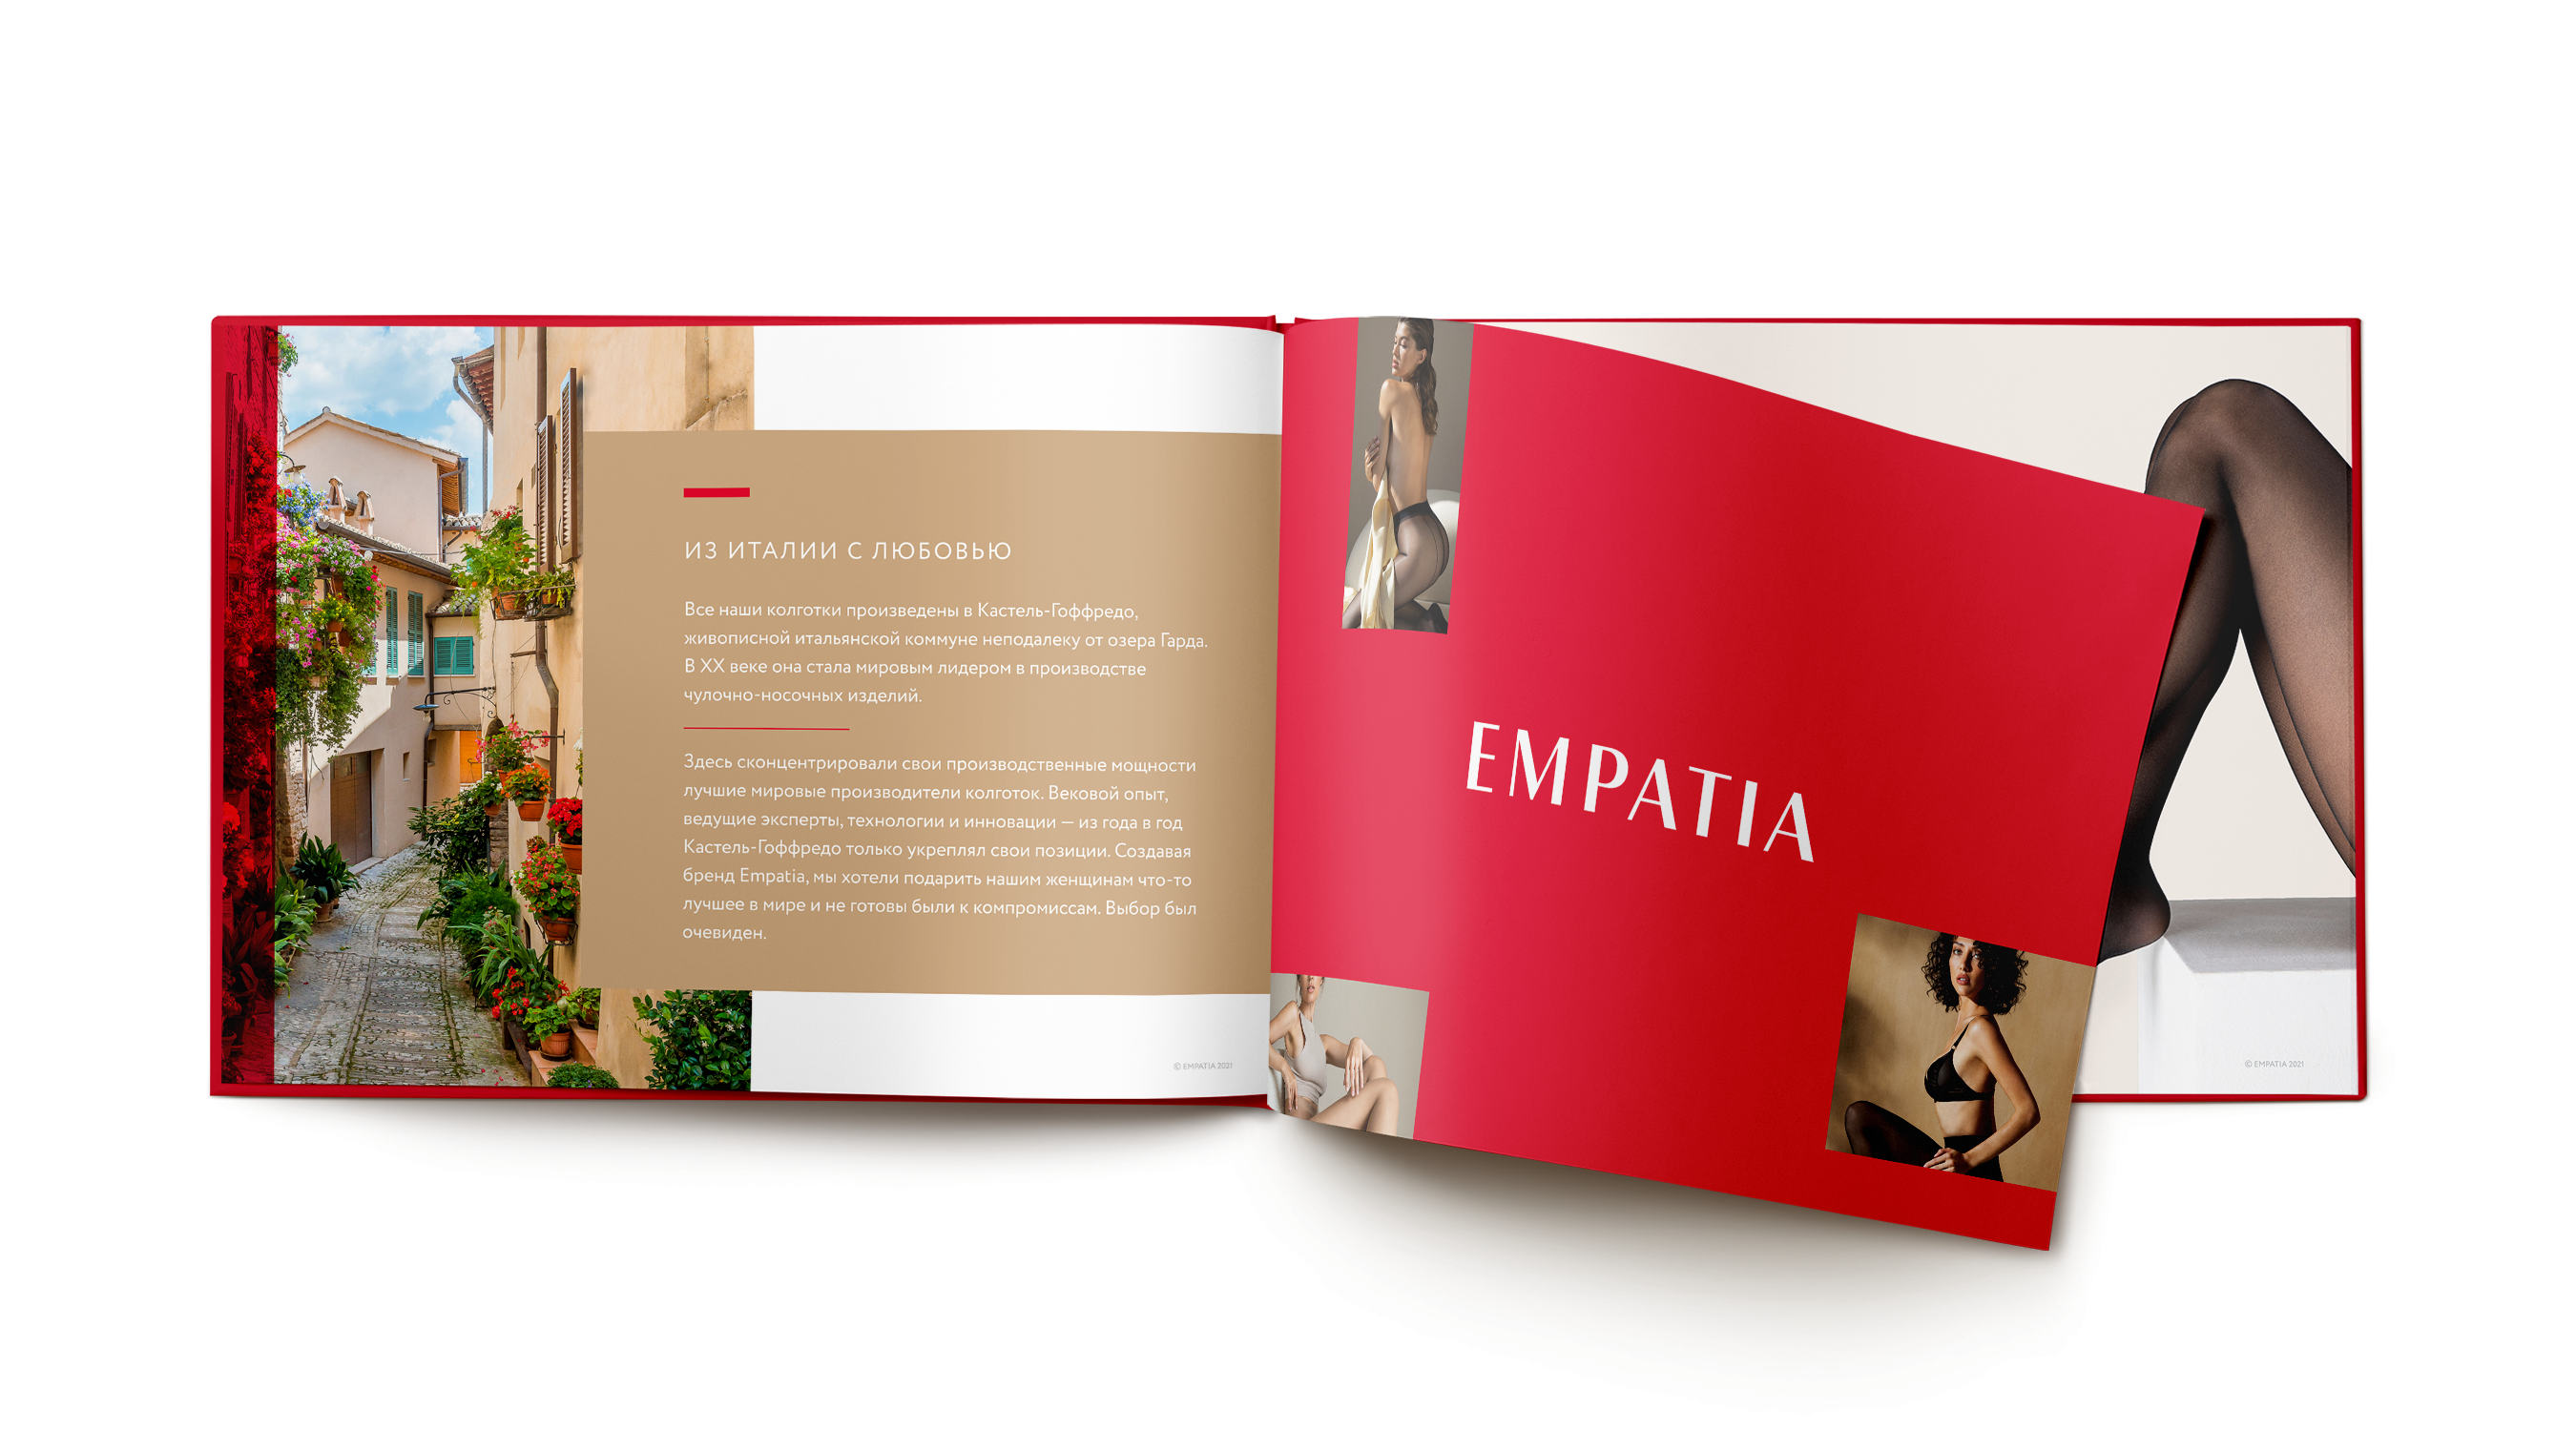 Имиджевый каталог продукции Empatia — один из ключевых носителей фирменного стиля бренда.